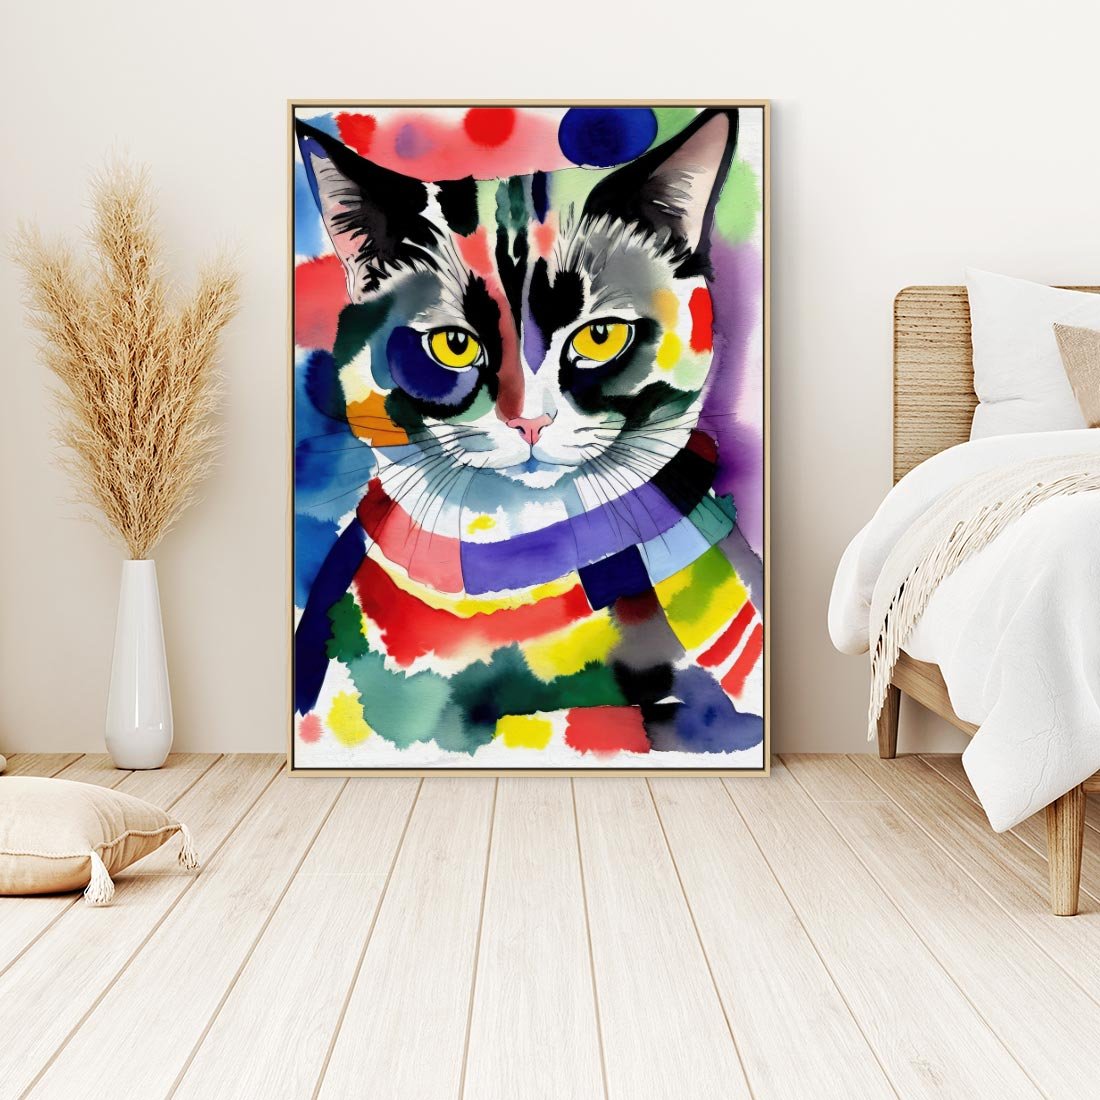 Obraz w ramie 50x70 - Koci Przyjaciel - abstrakcyjny obraz, akwarela - rama drewno